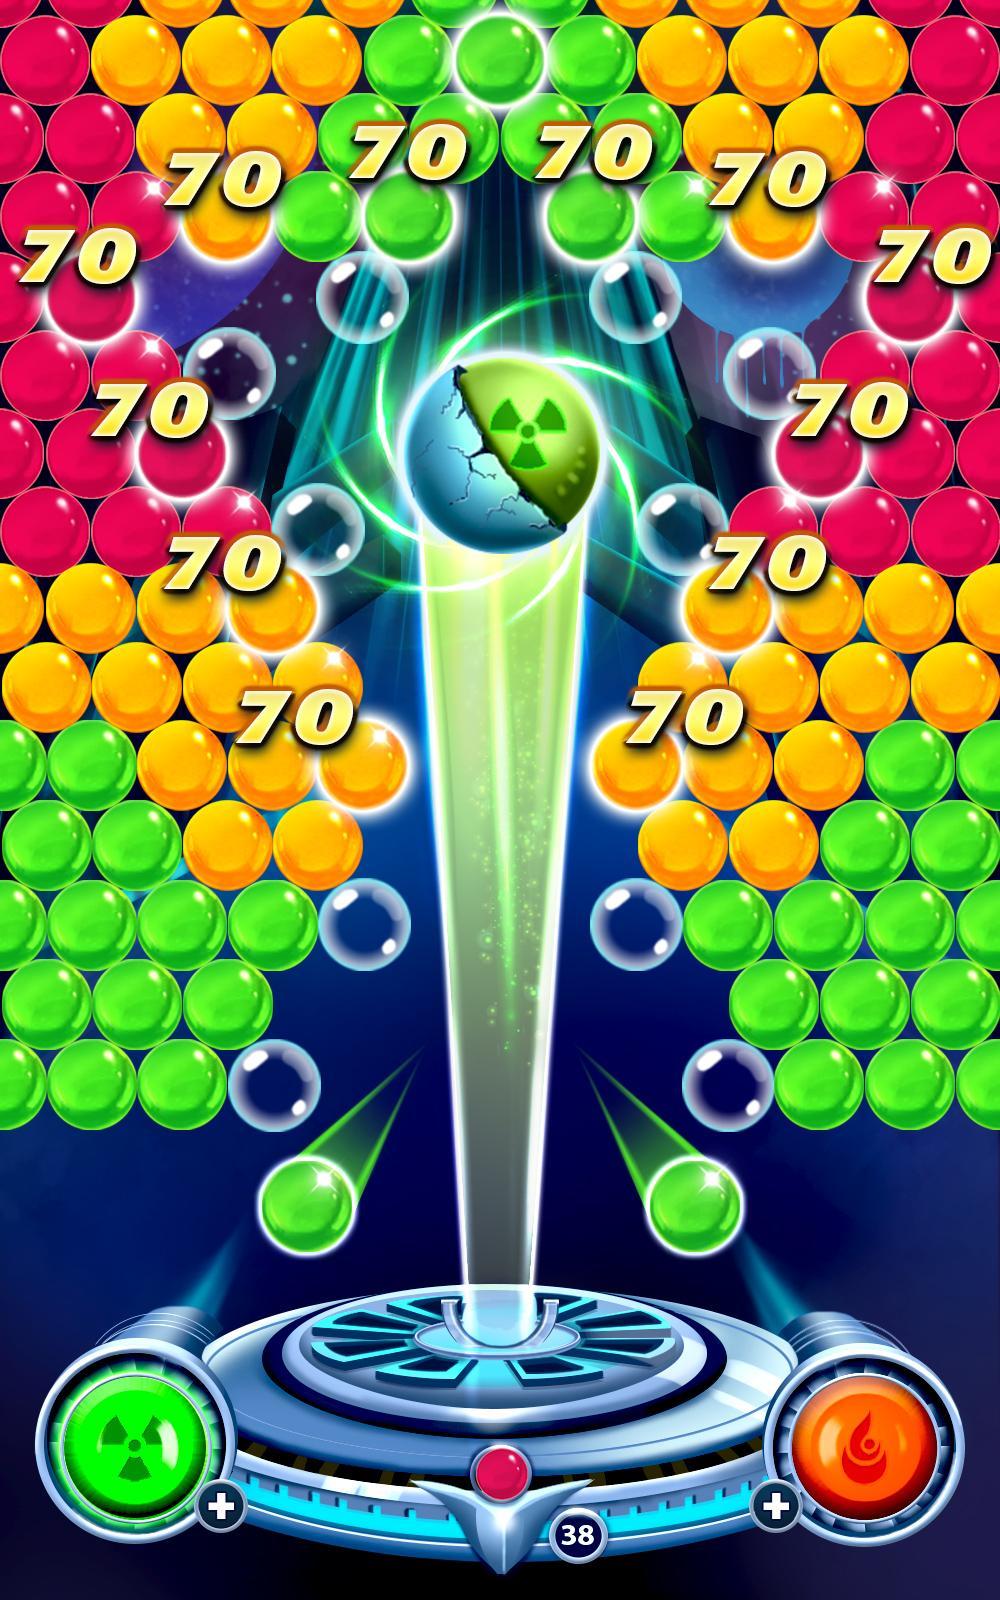 Screenshot of Bubble Madness